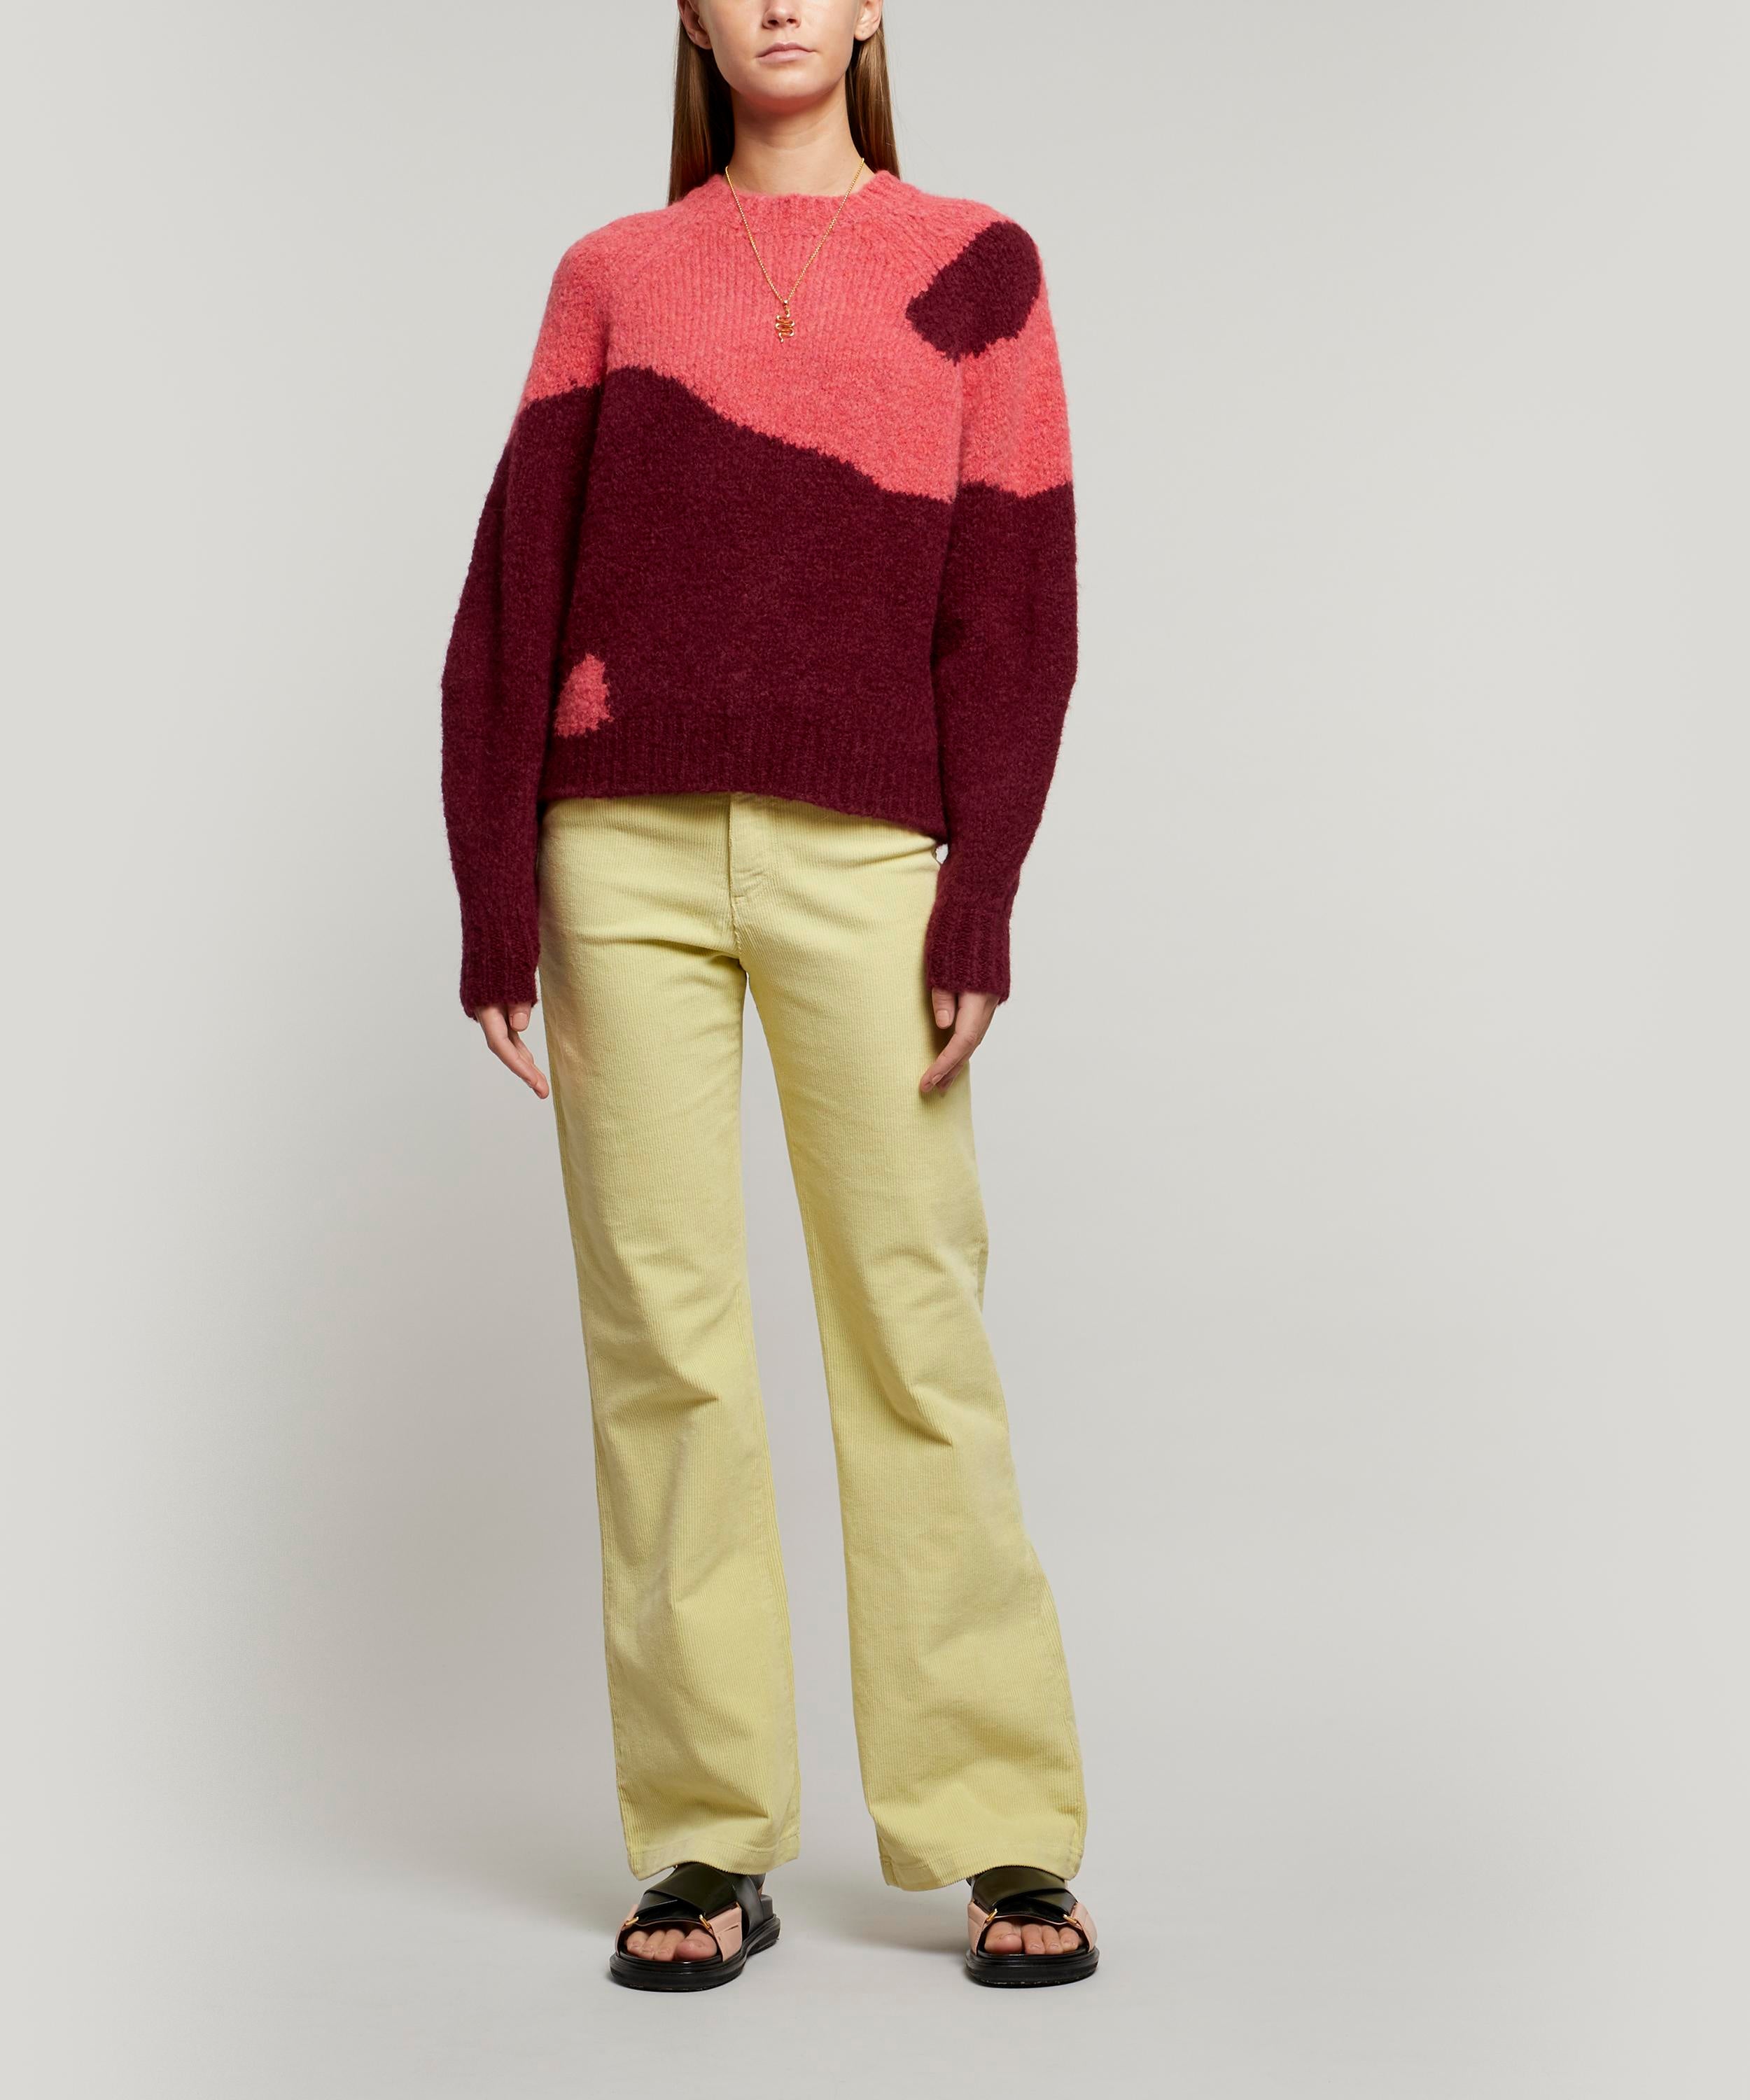 Paloma Wool + Yin Yang Knitted Sweater